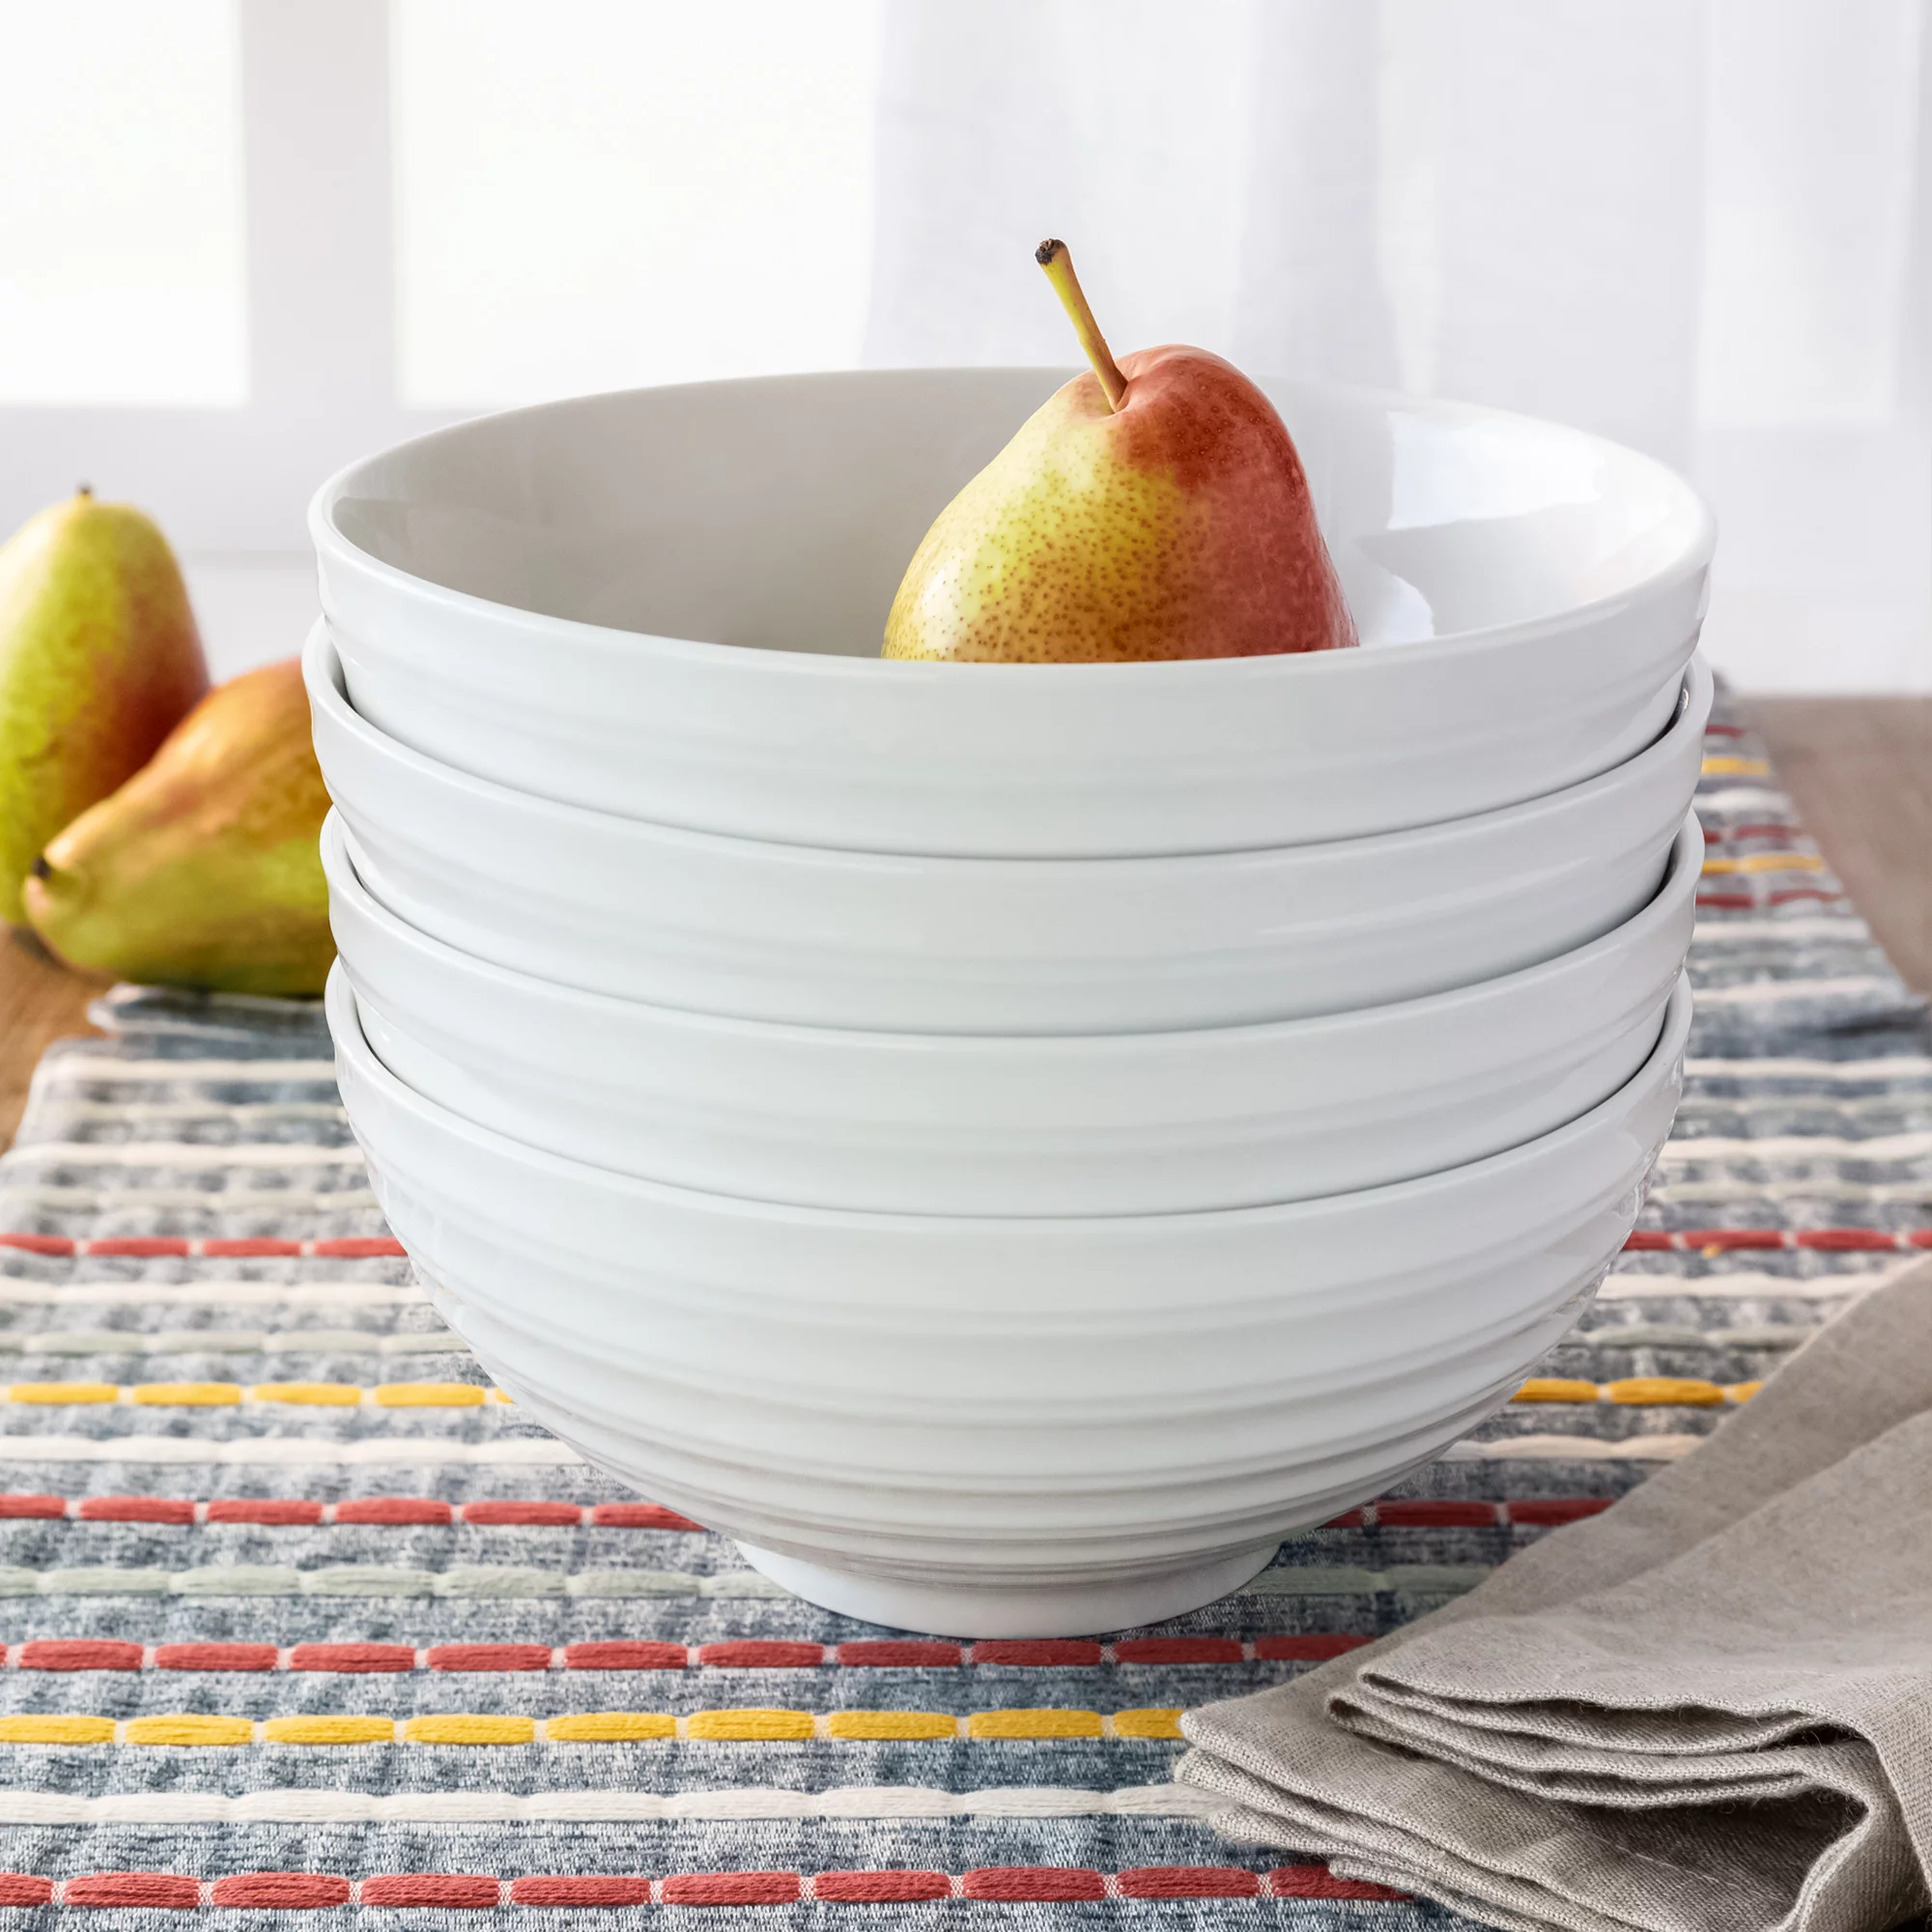 Better Homes & Gardens- White Round Porcelain Serve Bowl